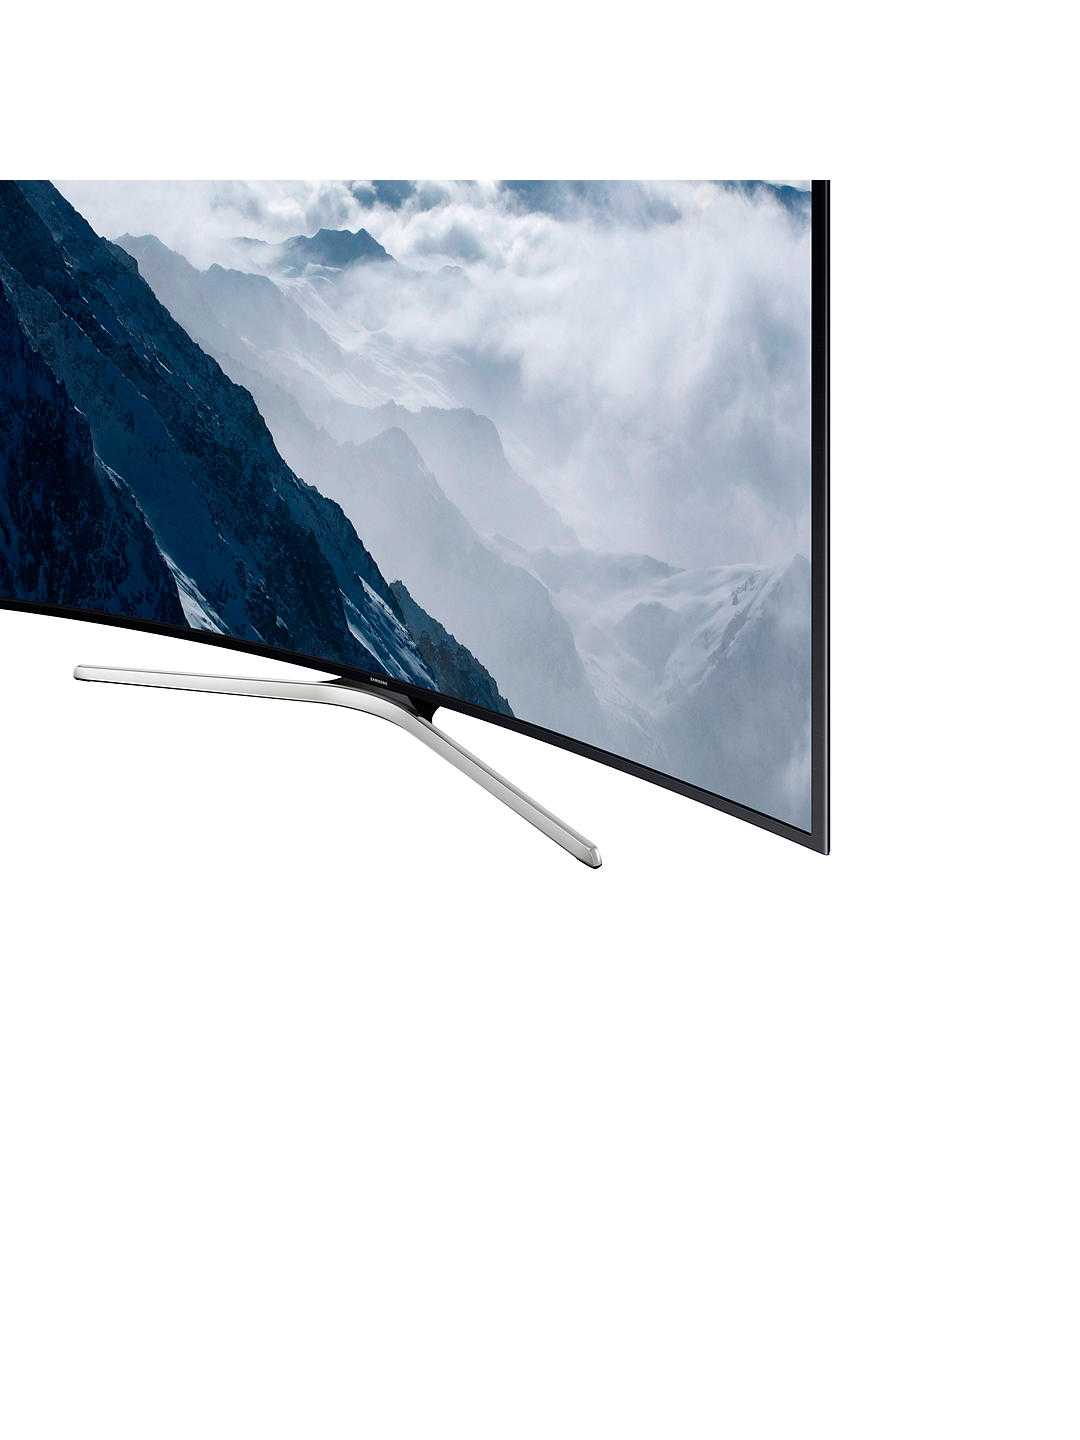 Телевизор Samsung UE55F9080 - подробные характеристики обзоры видео фото Цены в интернет-магазинах где можно купить телевизор Samsung UE55F9080